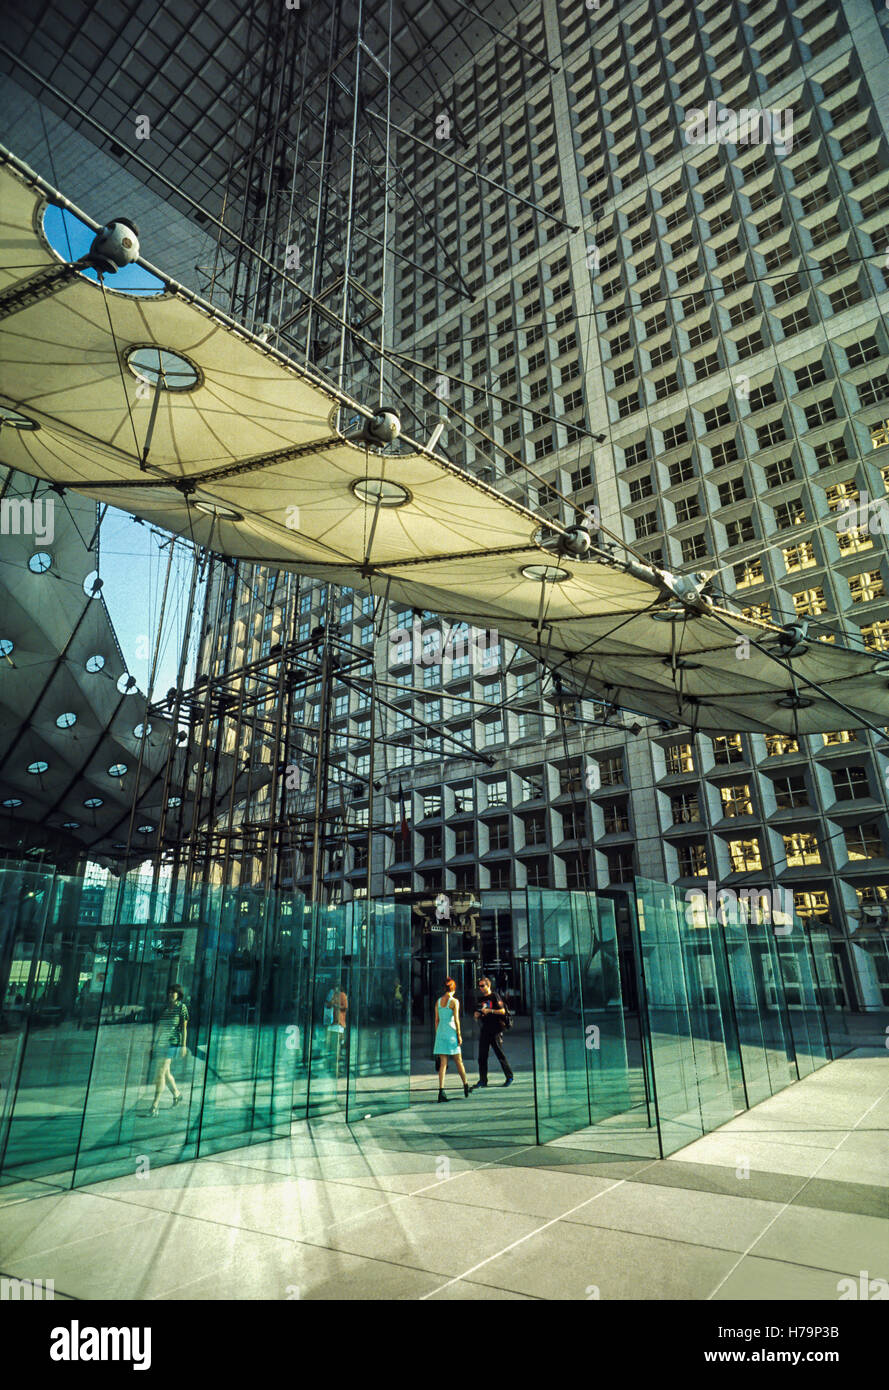 La Grande Arche de La Défense, Paris, France. Stock Photo